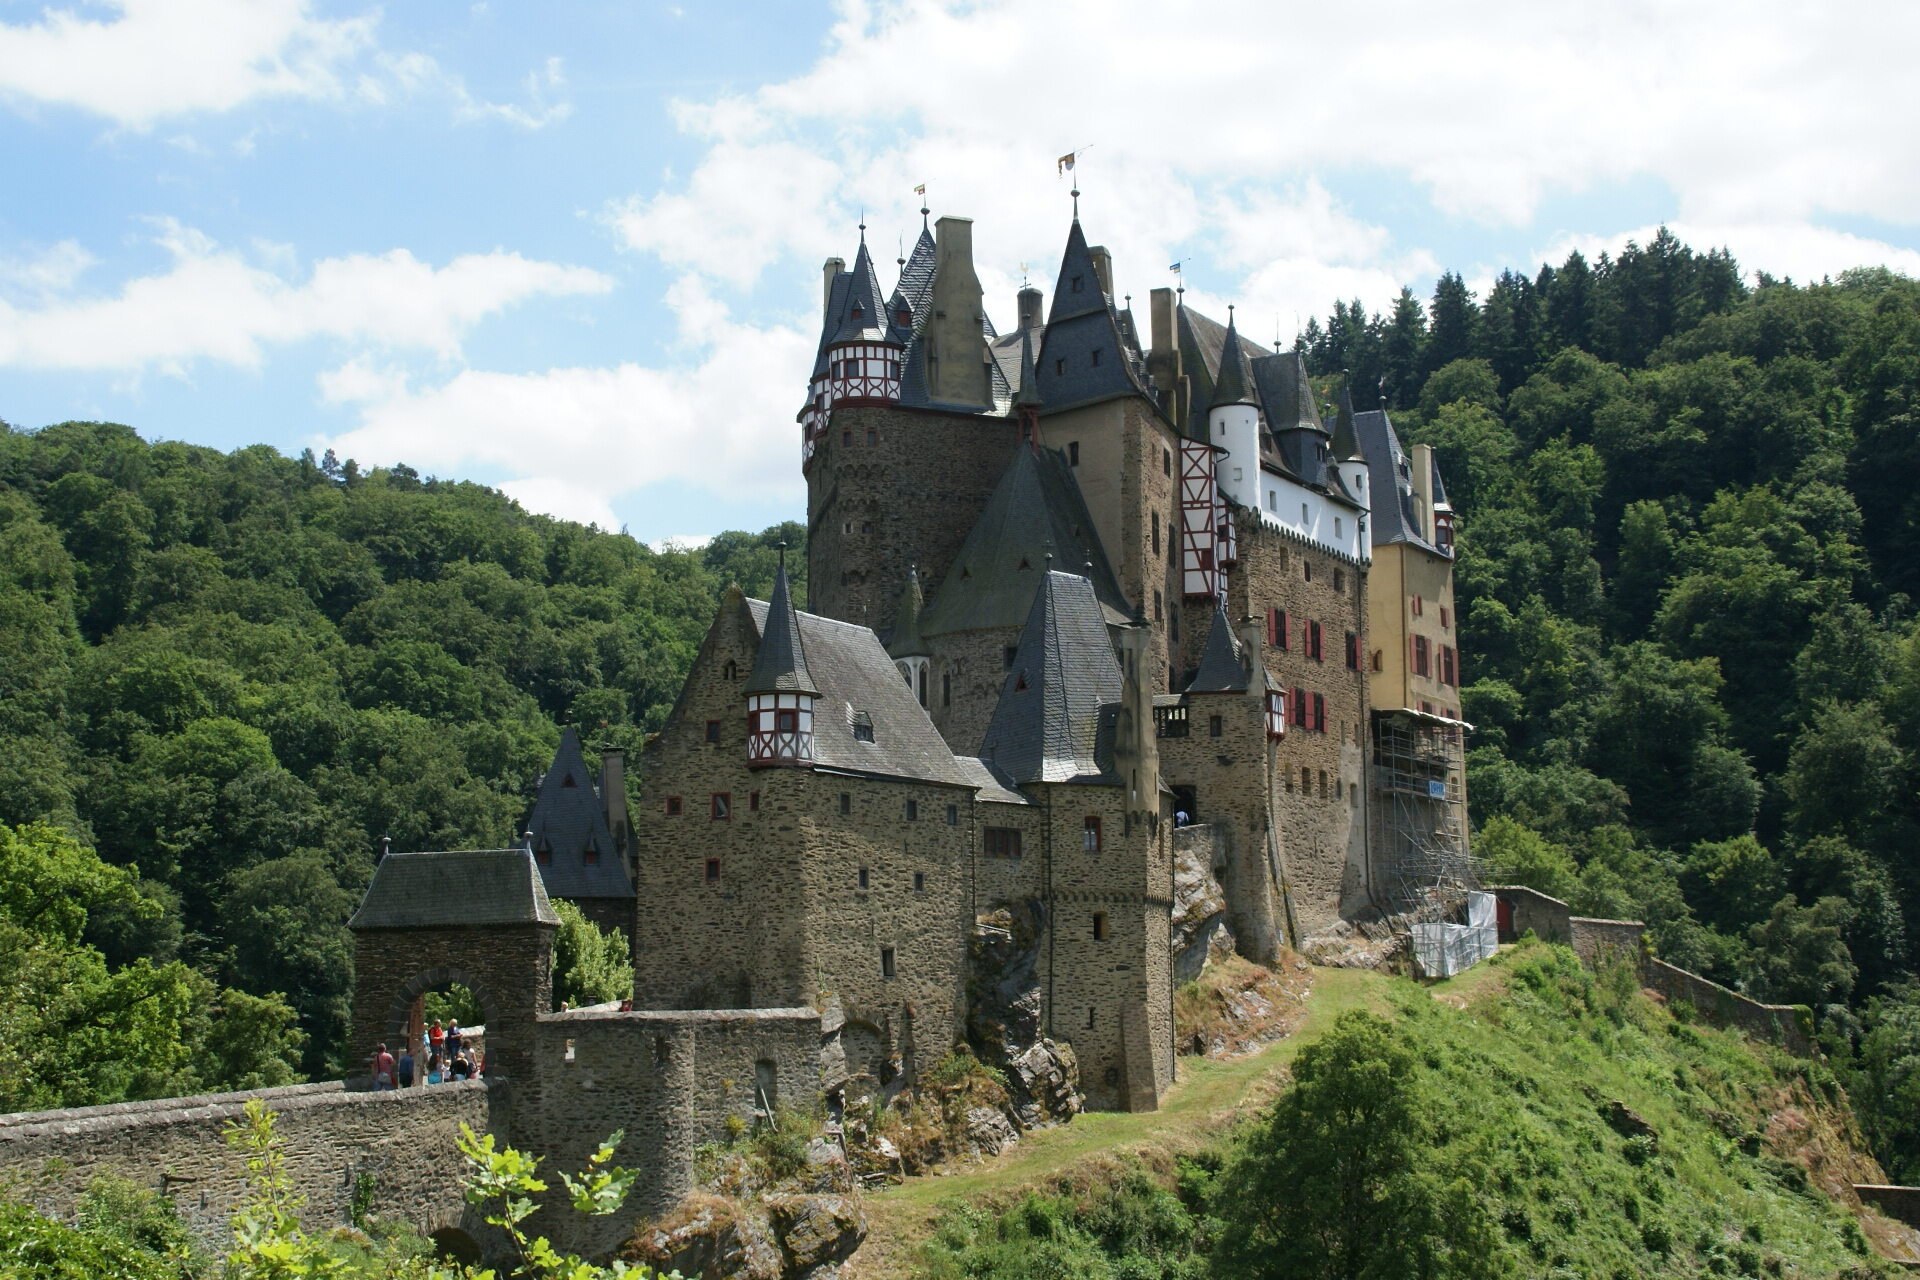 W jakim kraju znajduje się zamek Eltz?